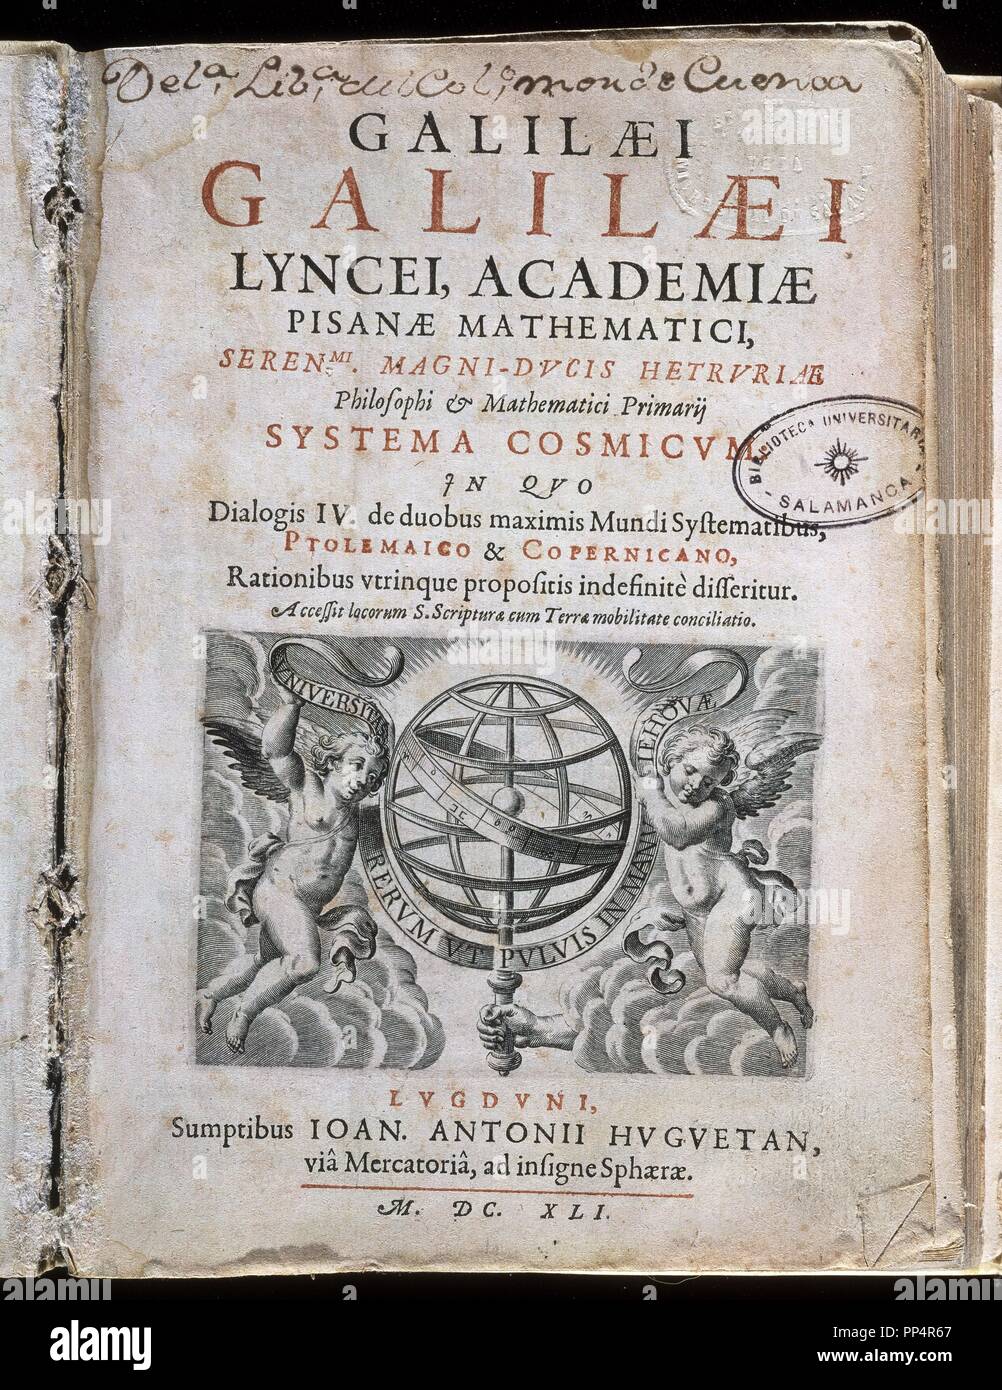 COSMIC SYSTEM-COVER-PRINTED IN 1641. Author: GALILEI, GALILEO. Location: UNIVERSIDAD BIBLIOTECA. SALAMANCA. SPAIN. Stock Photo